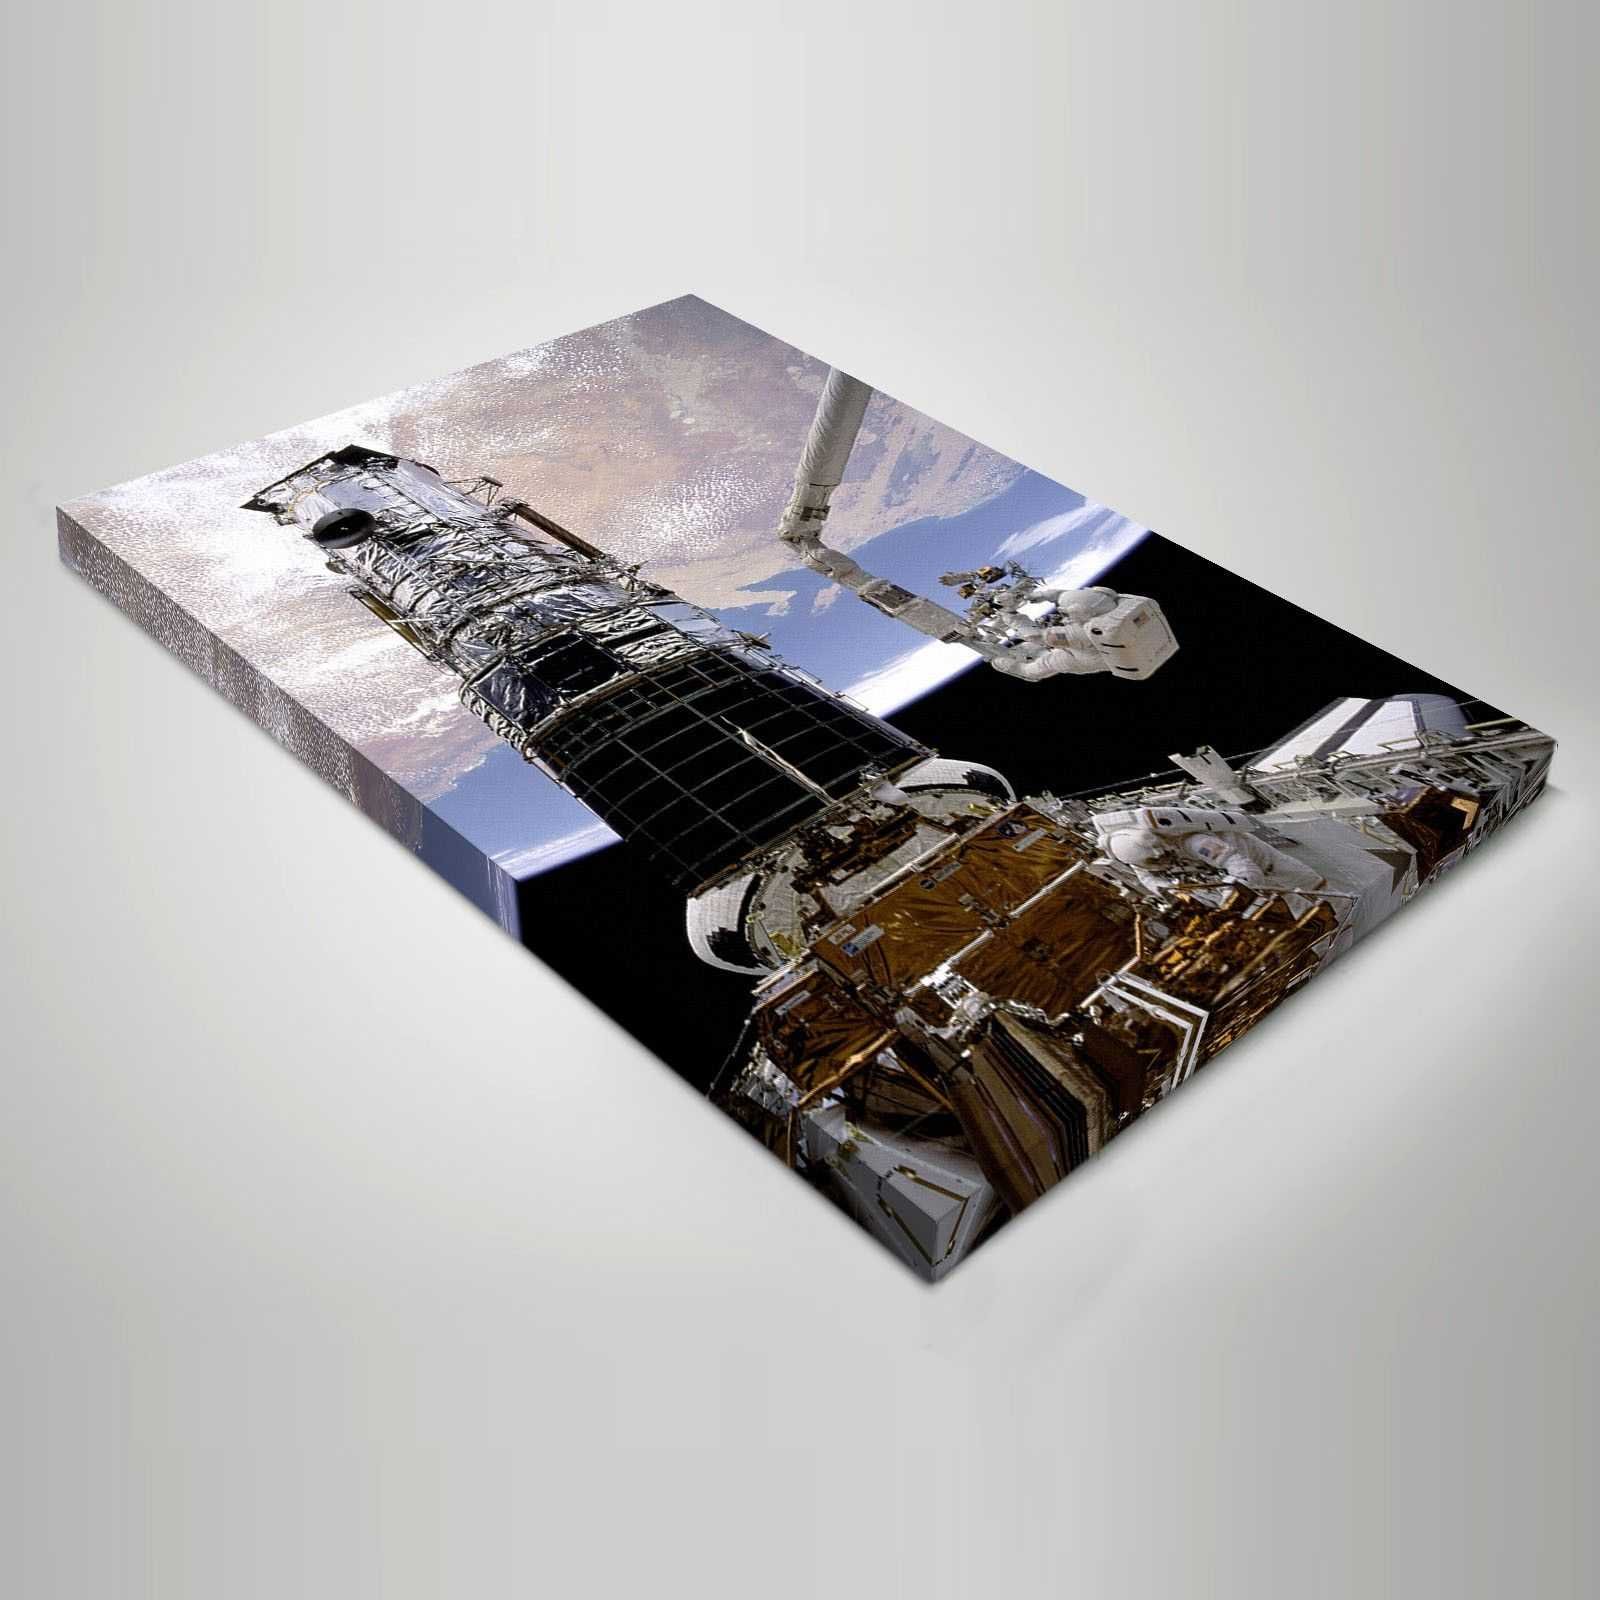 Quadro Spazio e Pianeti Vista della Terra dallo spazio astronauta su tela sp45